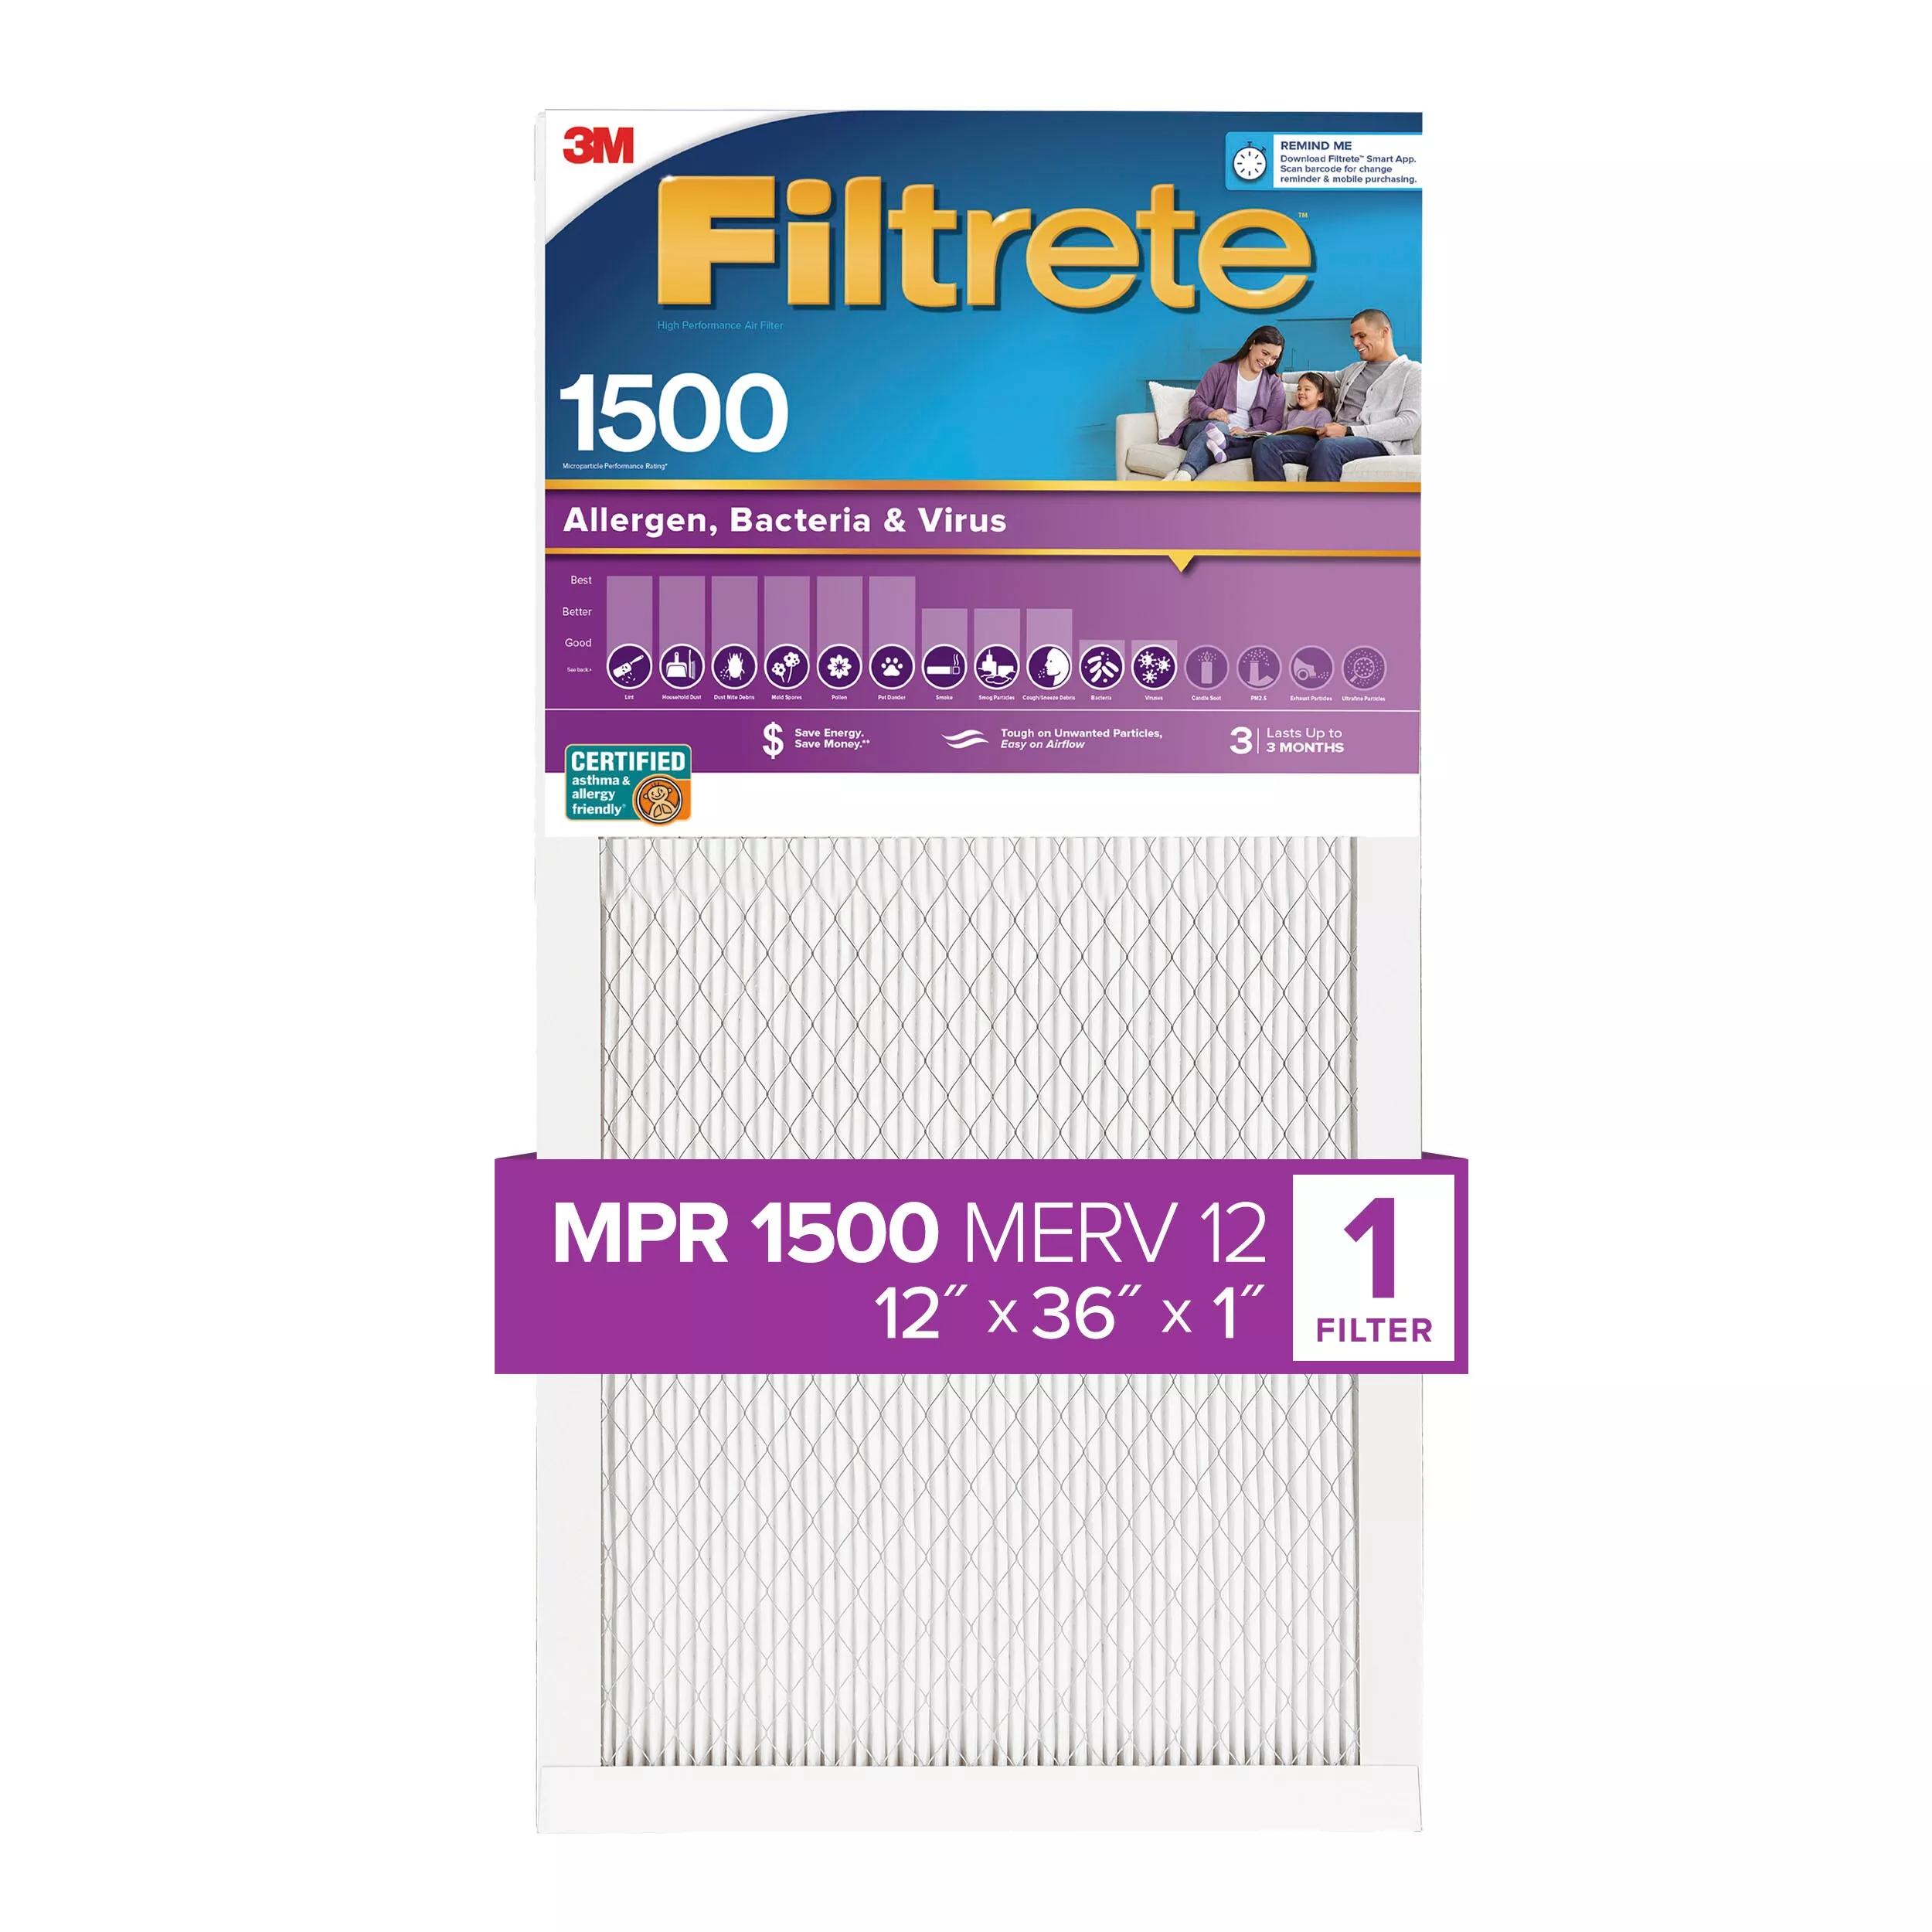 Filtrete™ High Performance Air Filter 1500 MPR 2014DC-4, 12 in x 36 in x 1 in (30.4 cm x 91.4 cm x 2.5 cm)